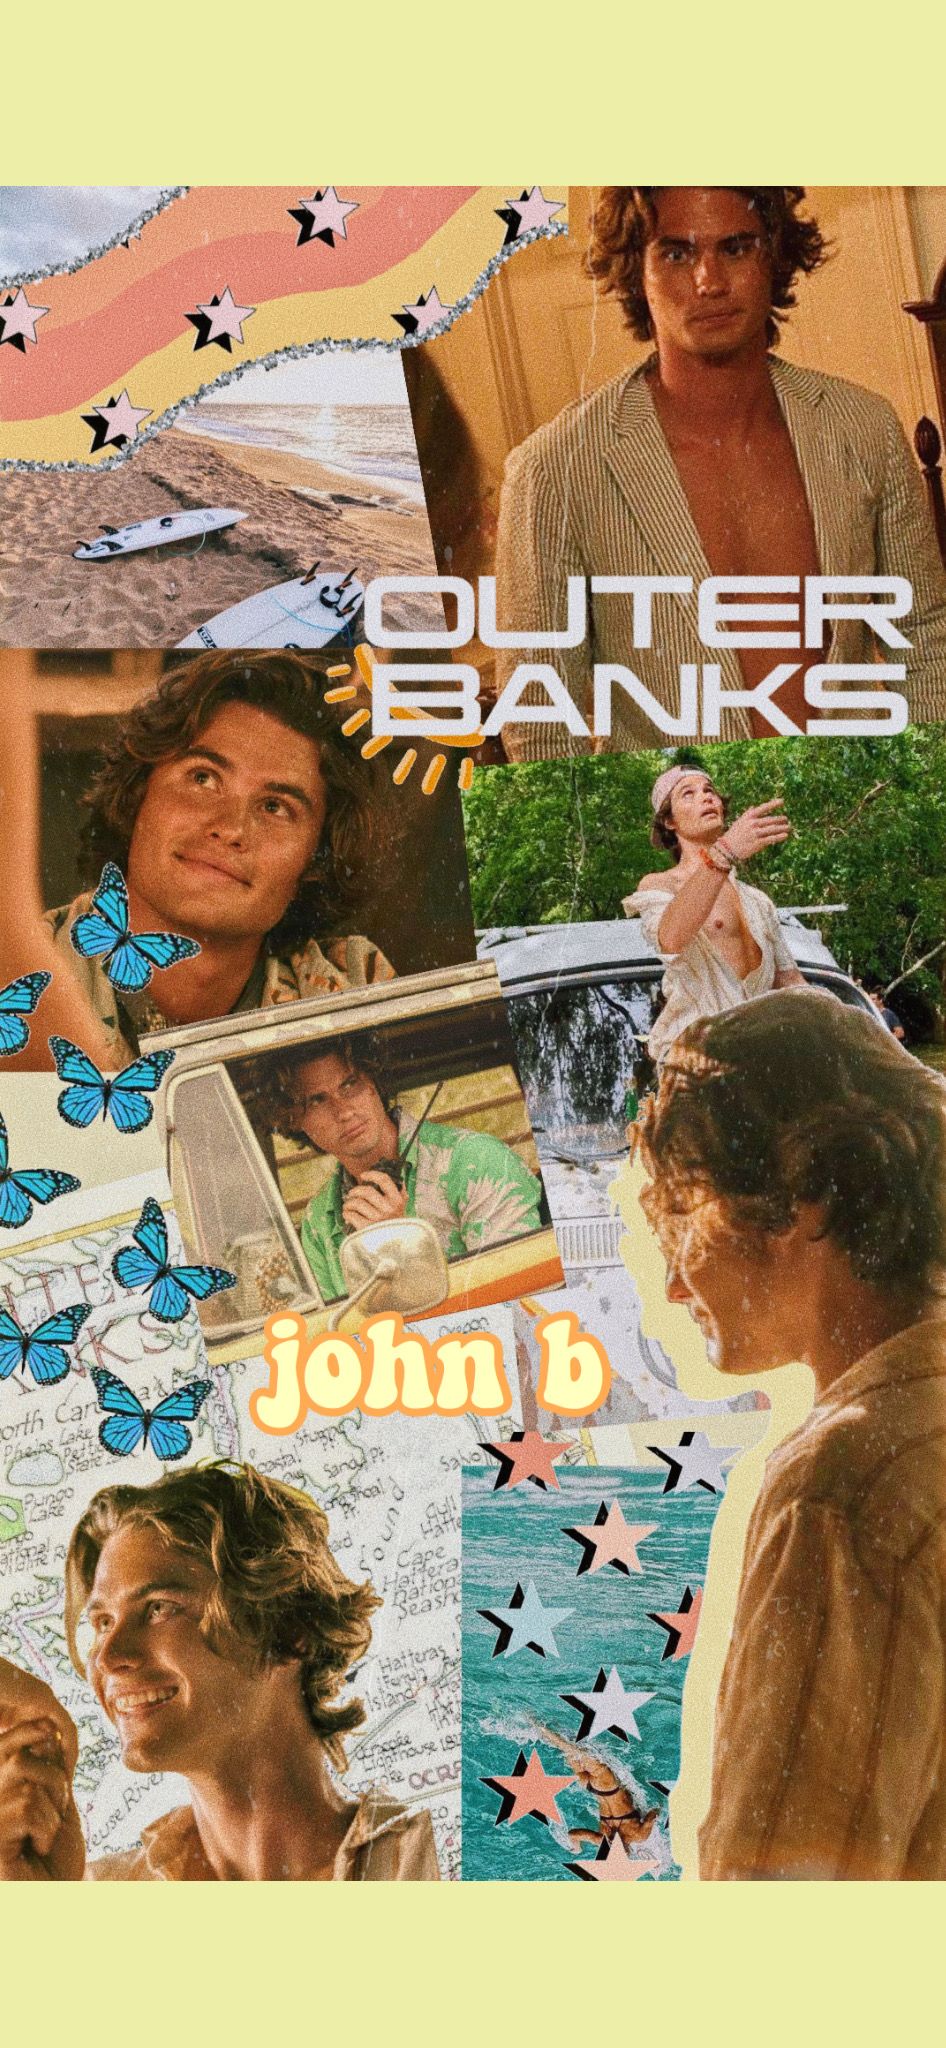 john b outer banks wallpaper. Outer banks, Outer, $b wallpaper